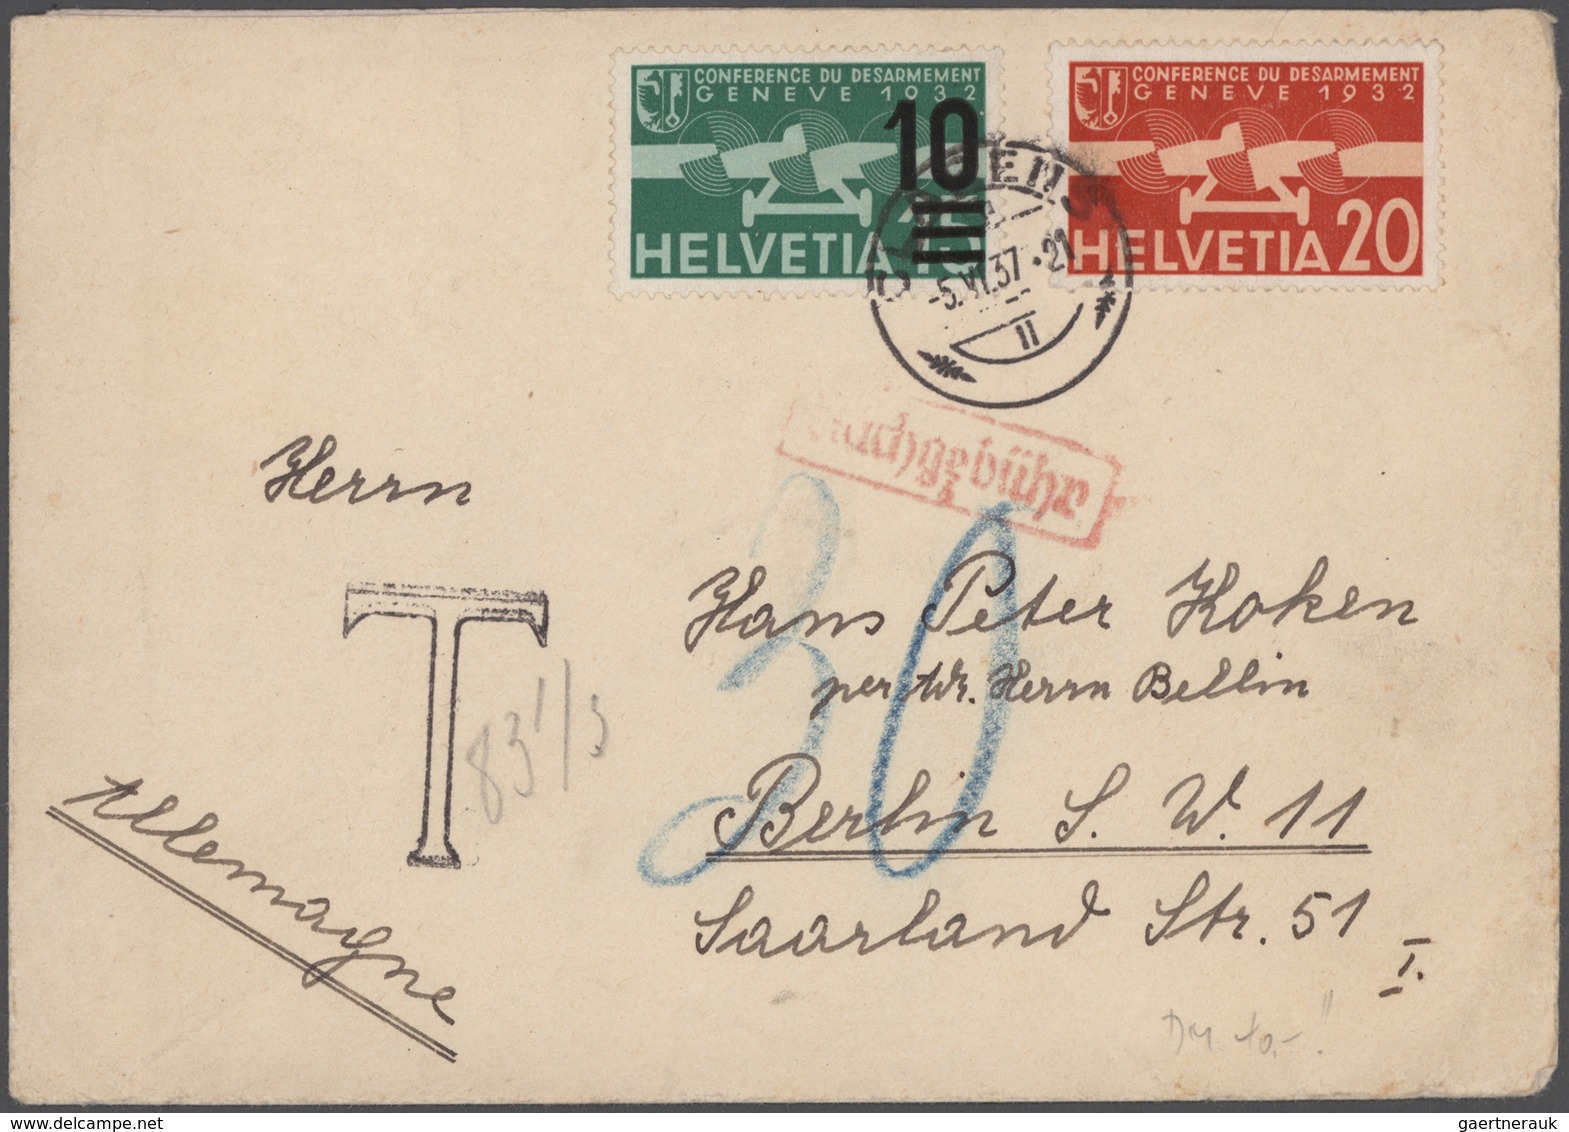 Schweiz: 1814/1955, vielseitige Partie von 58 Briefen und Karten, ab gutem Teil Vorphila, Markenzeit